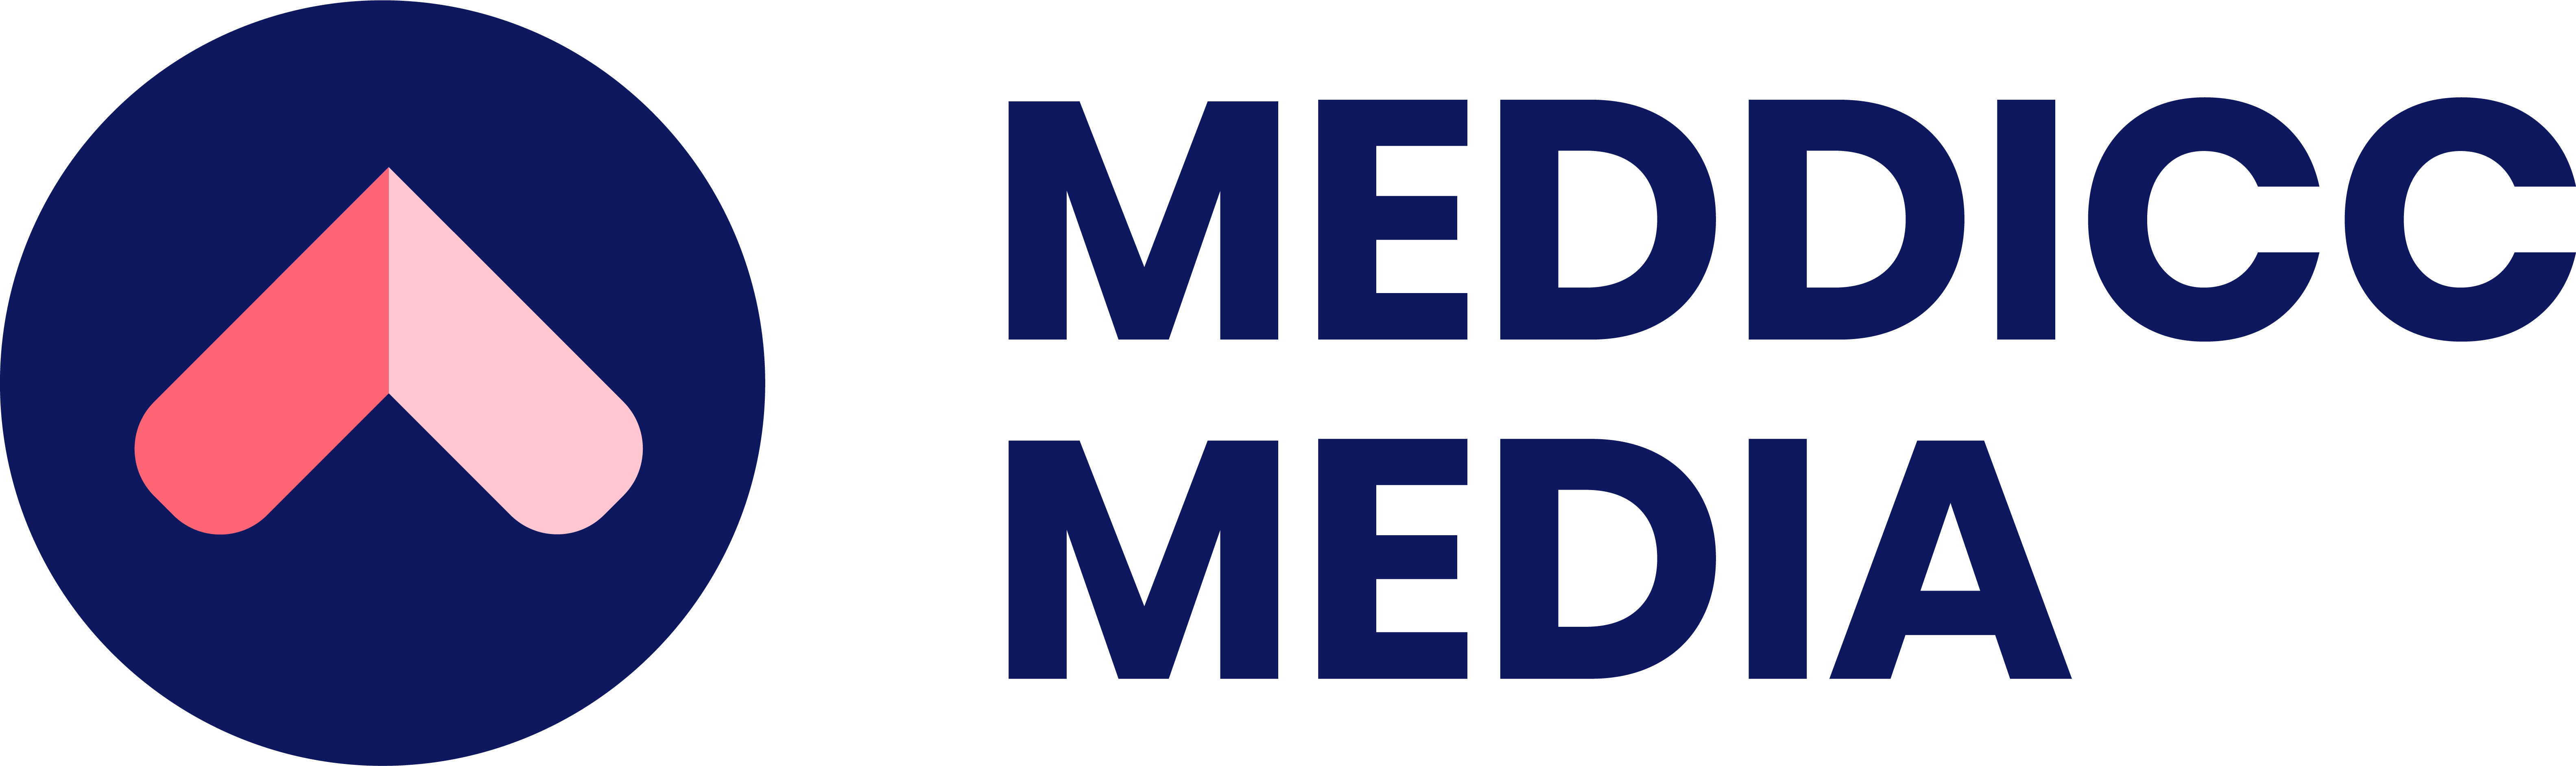 MEDDICC Media